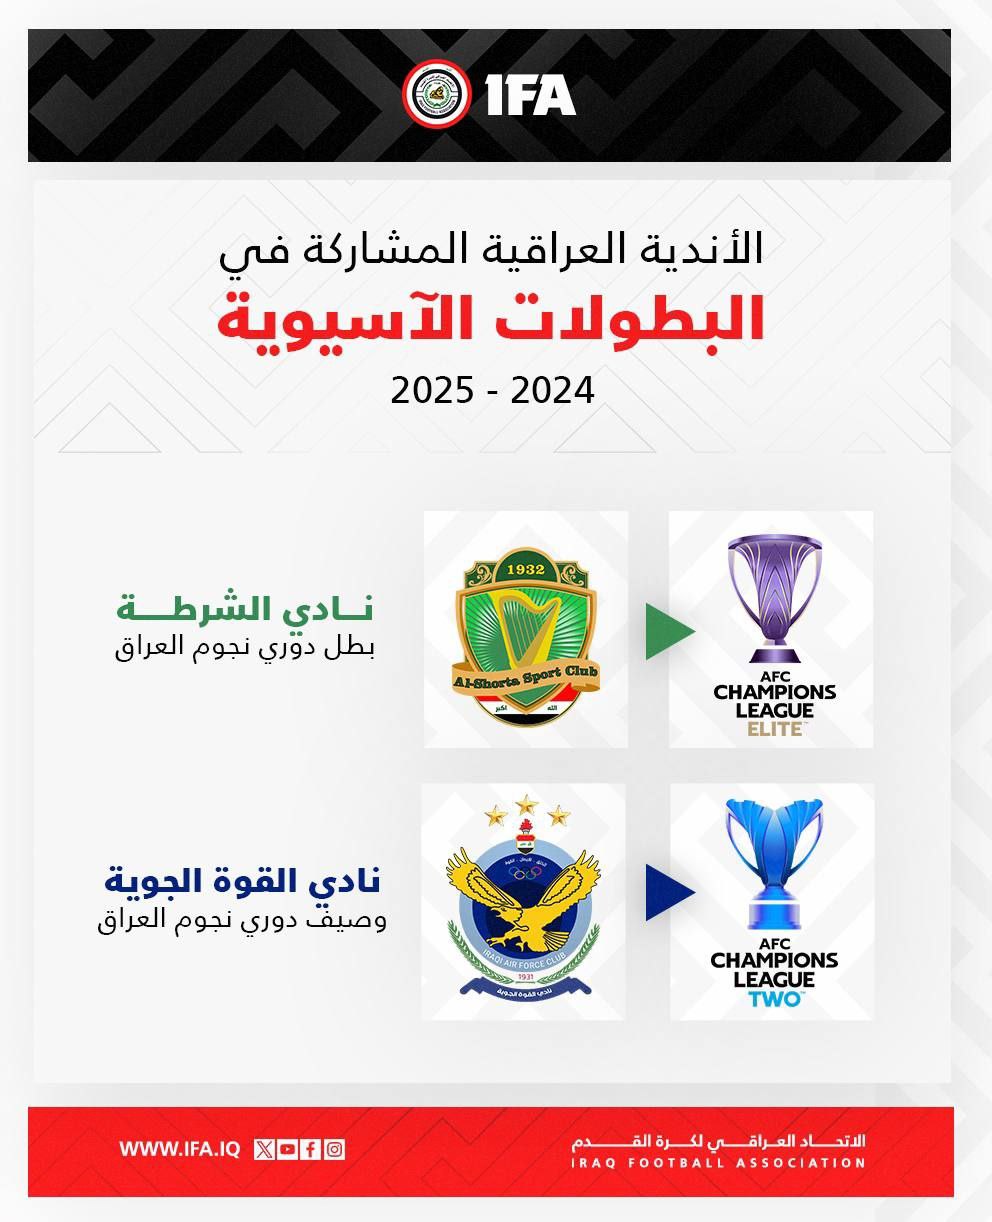 أعلن اتحاد الكرة العراقي، يوم السبت 13 تموز/يوليو 2024، تمثيل ناديي الشرطة والقوة الجوية للعراق في البطولتين الآسيويتين المقبلتين.